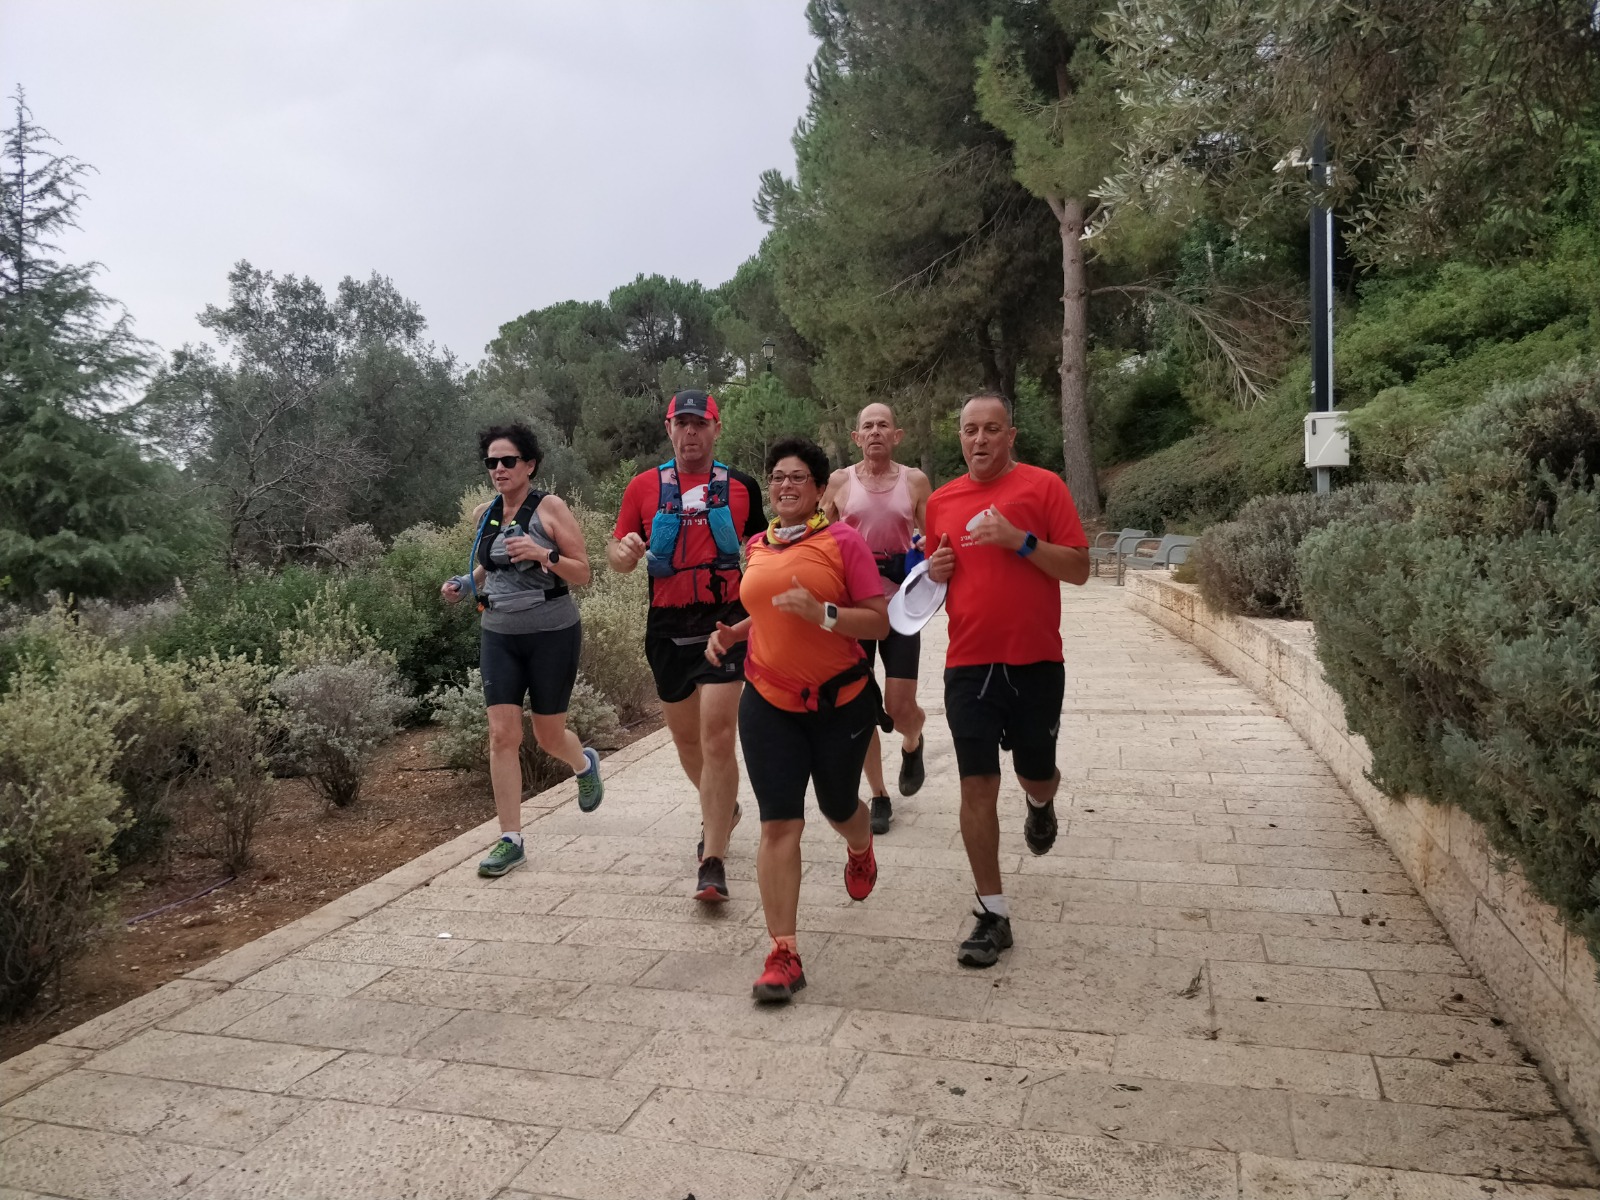 קבוצת מרתא - מועדון רצי תל אביב קורעים את השביל בריצה